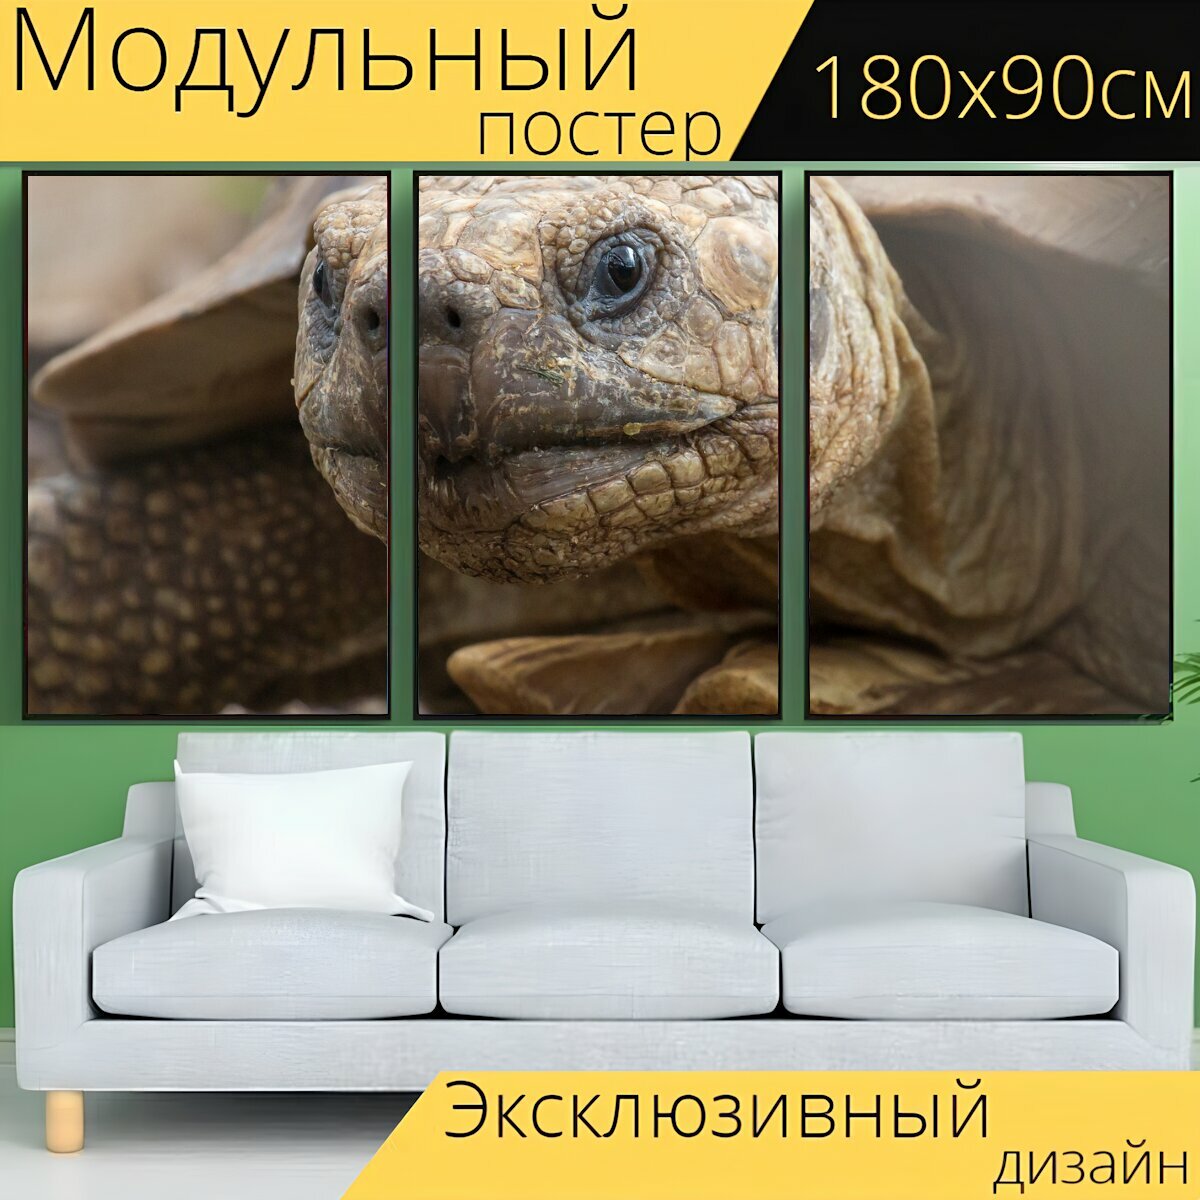 Модульный постер "Черепаха, животное, дикая природа" 180 x 90 см. для интерьера